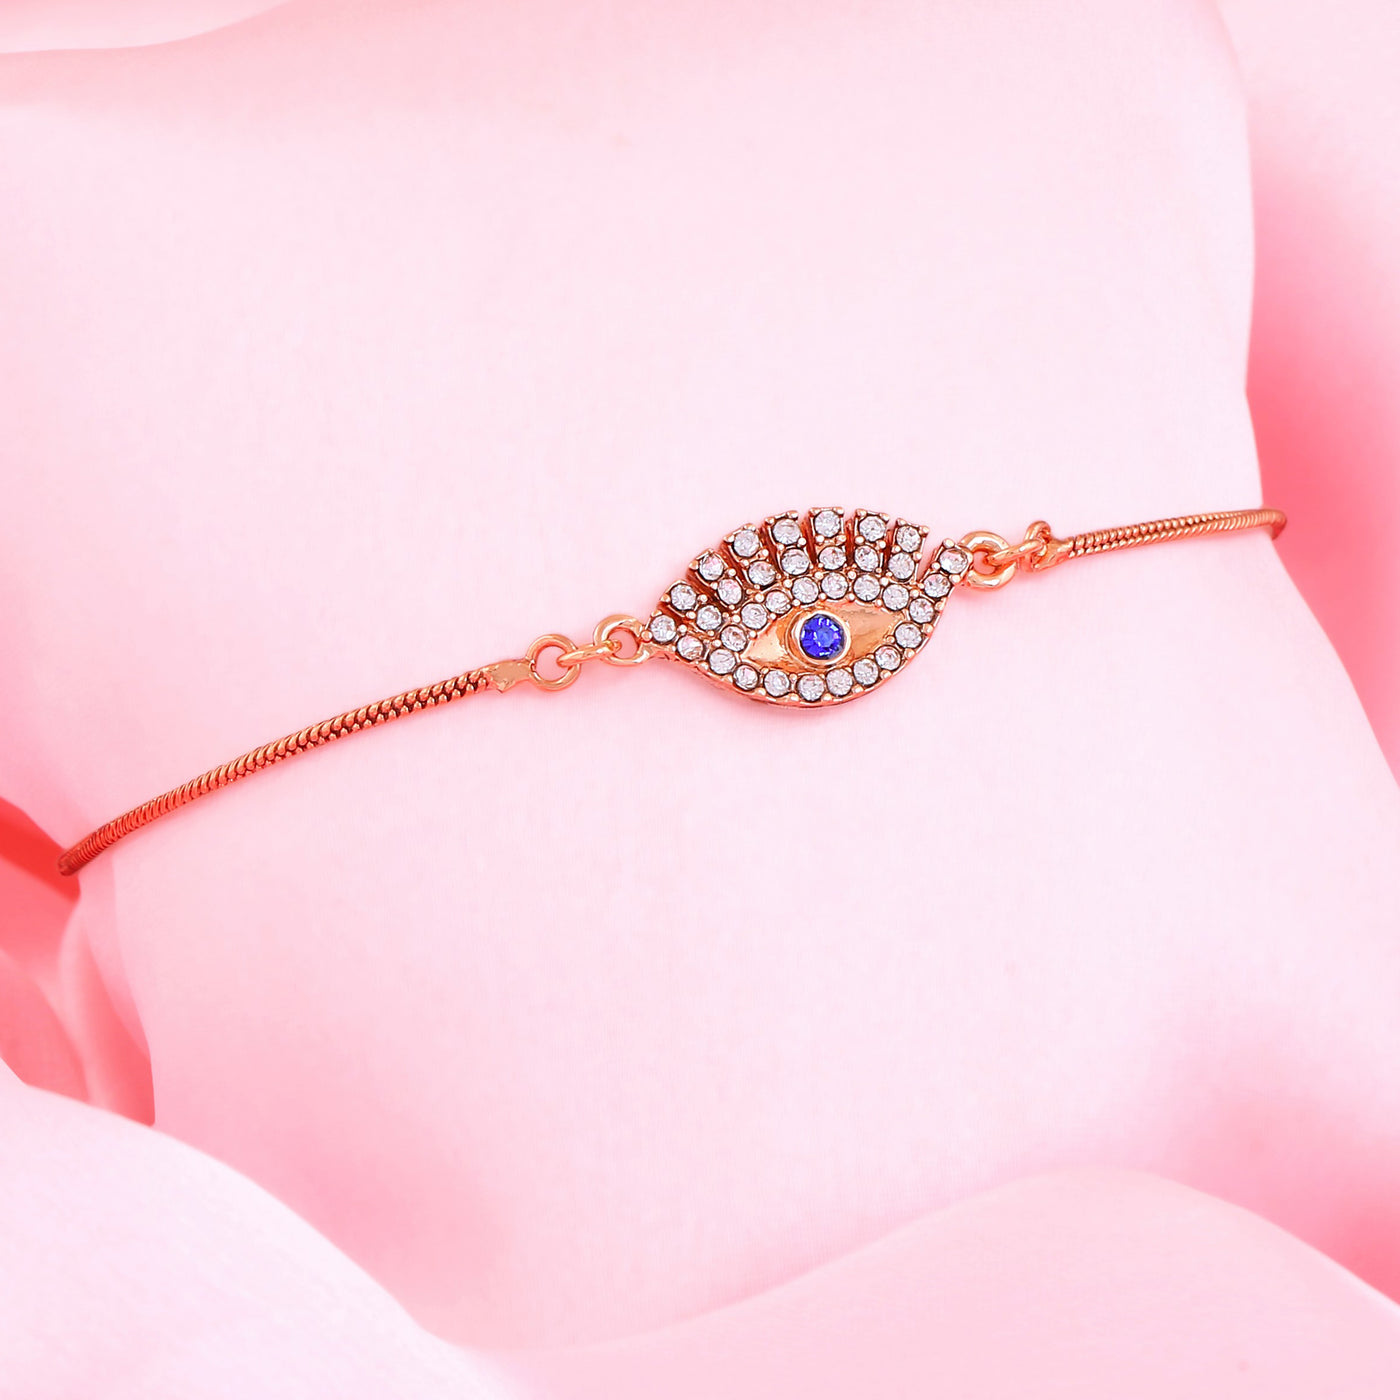 Estele Rose Gold Plated Evil Eye Designer Link Bracelet with Crystals for Women